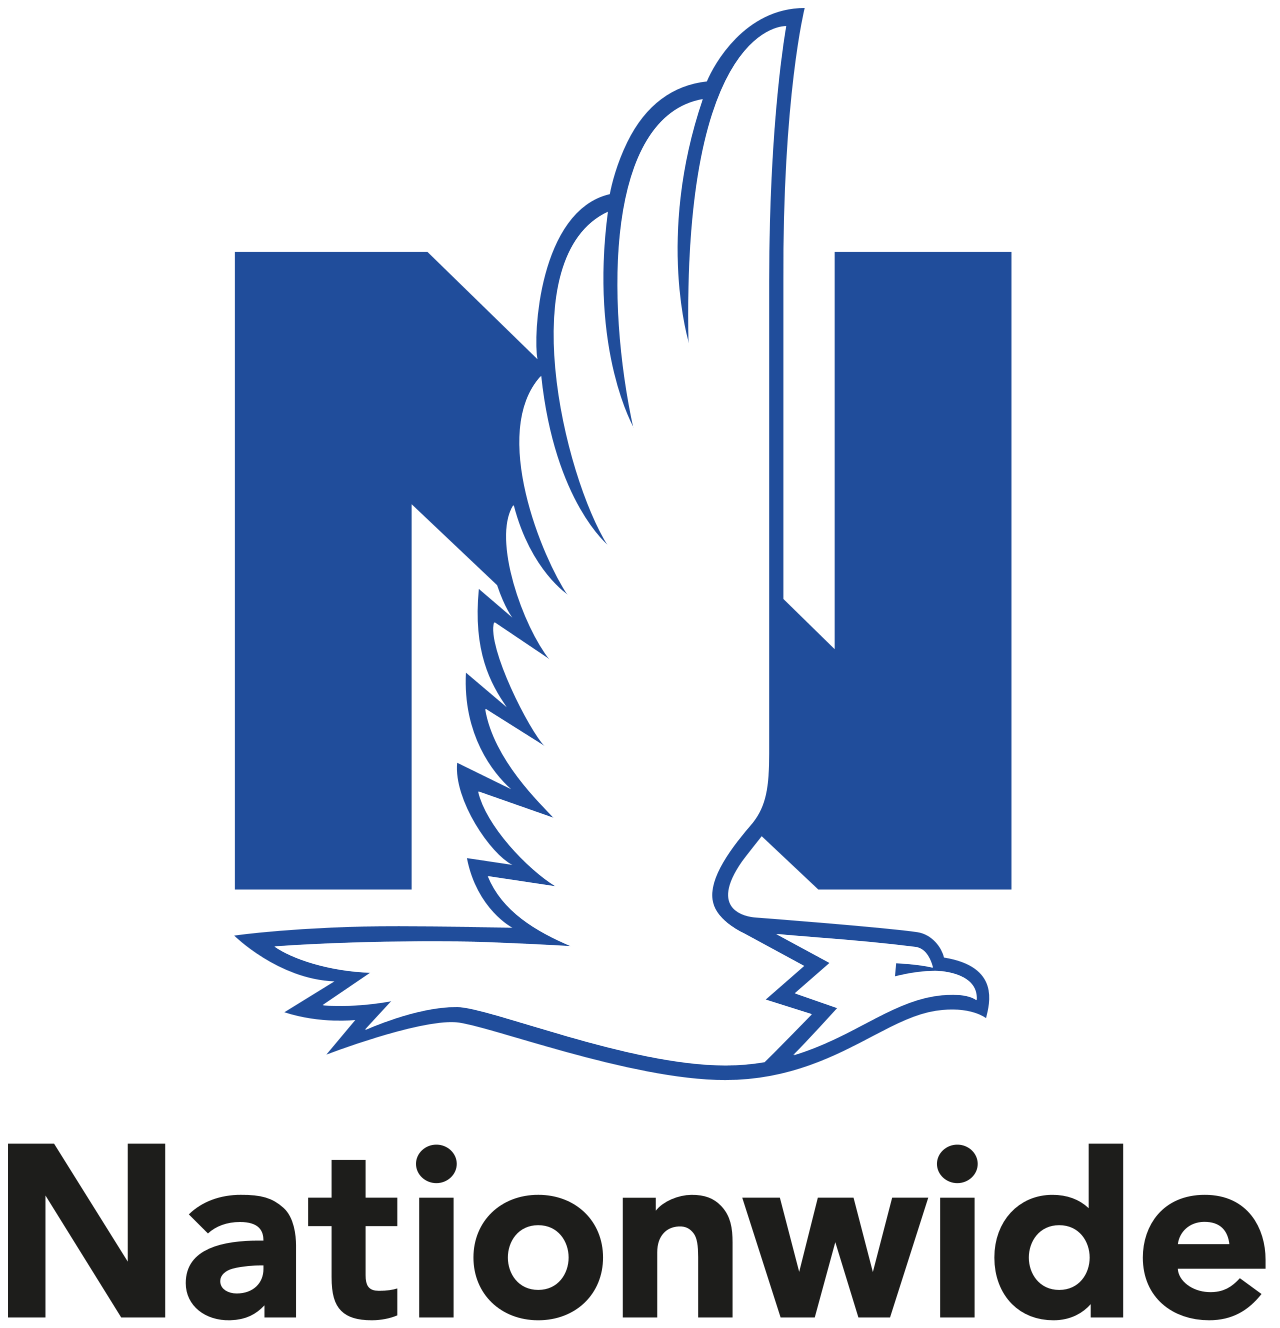 Nationwide Mutual Insurance Company logo.svg